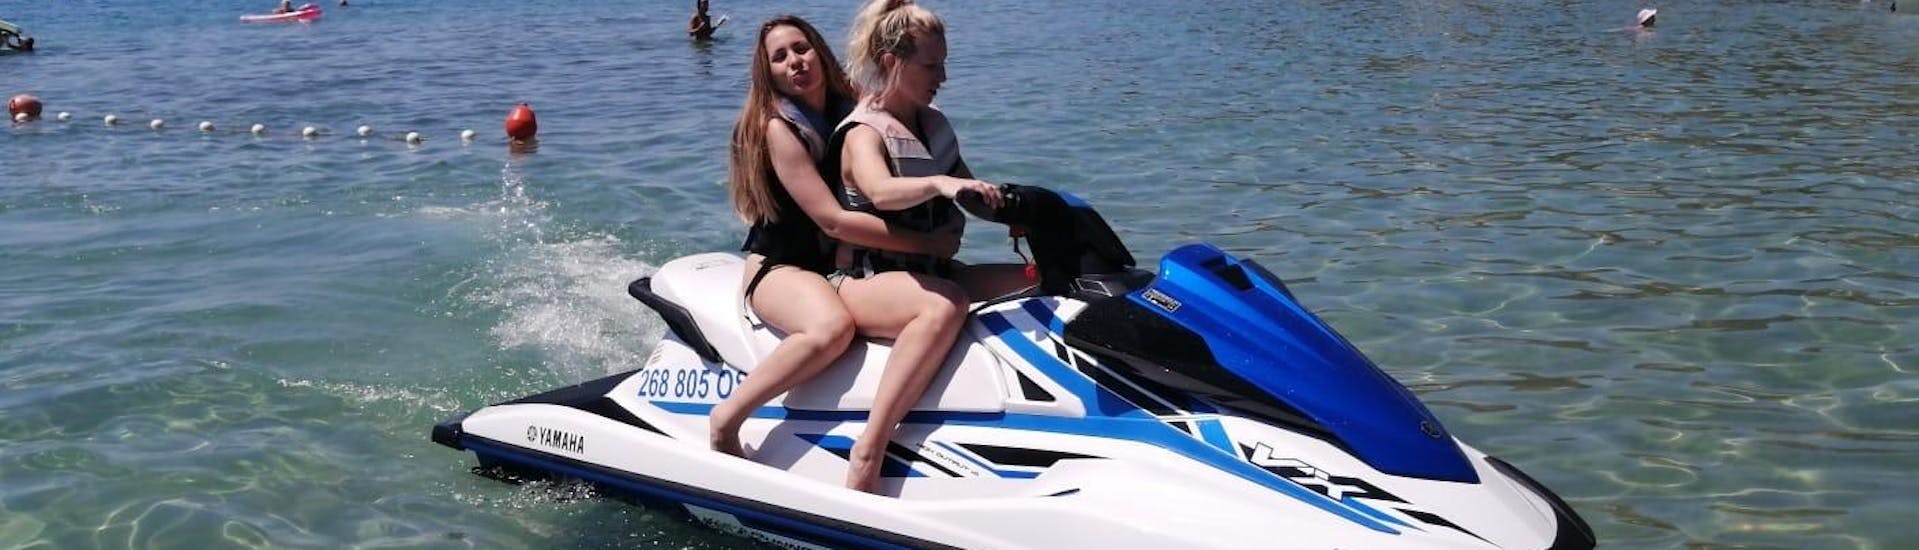 Deux femmes sont sur un jet ski loué à Adventure Croatia.